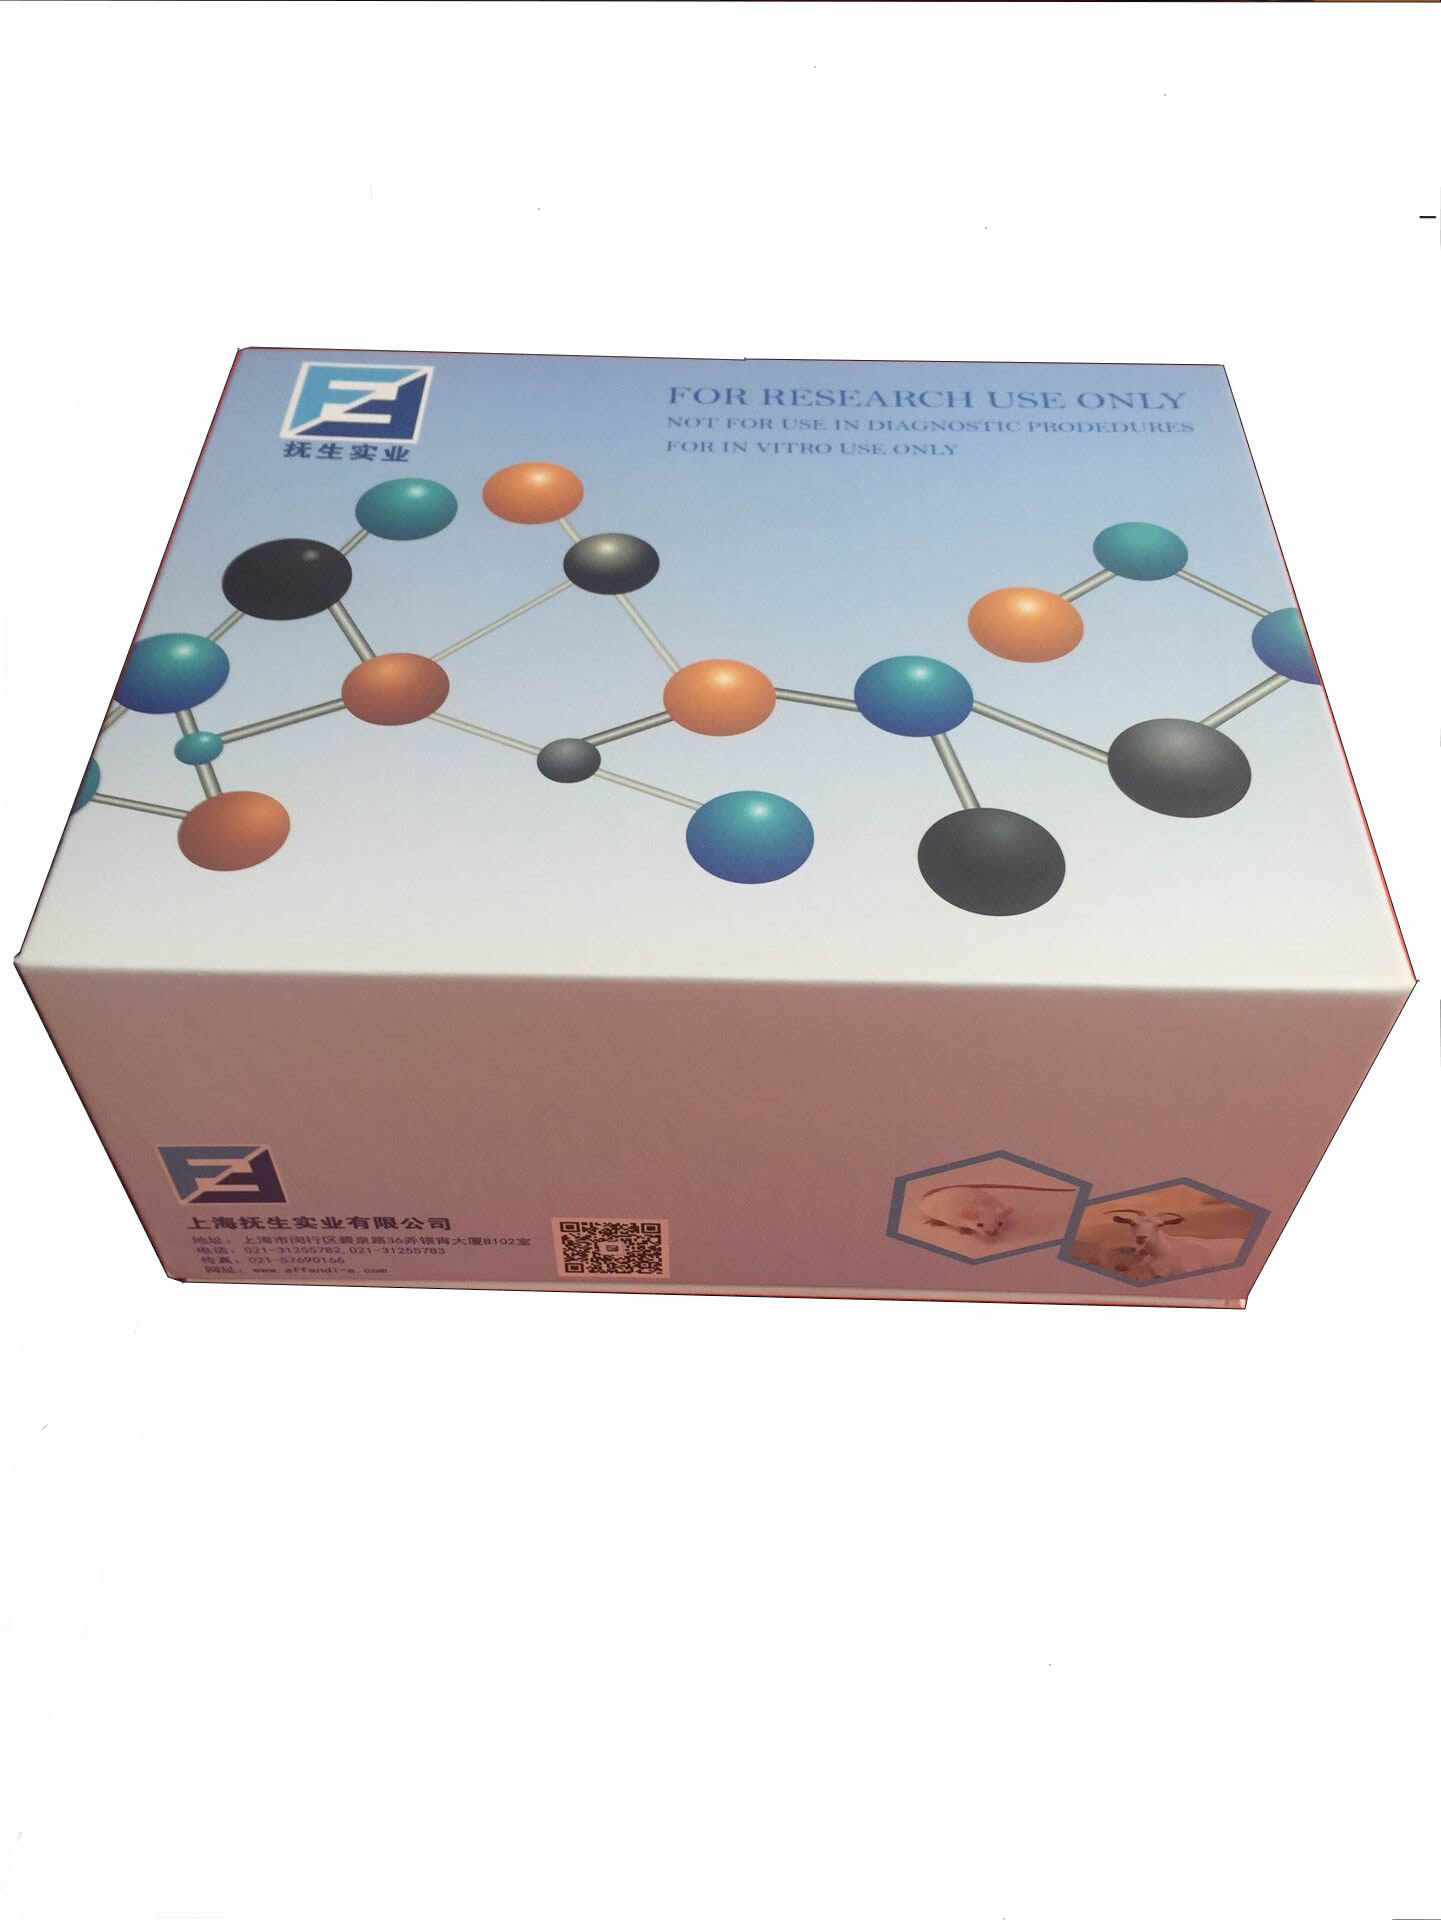 毒蕈碱型乙酰胆碱受体亚型M3抗体检测试剂盒厂家